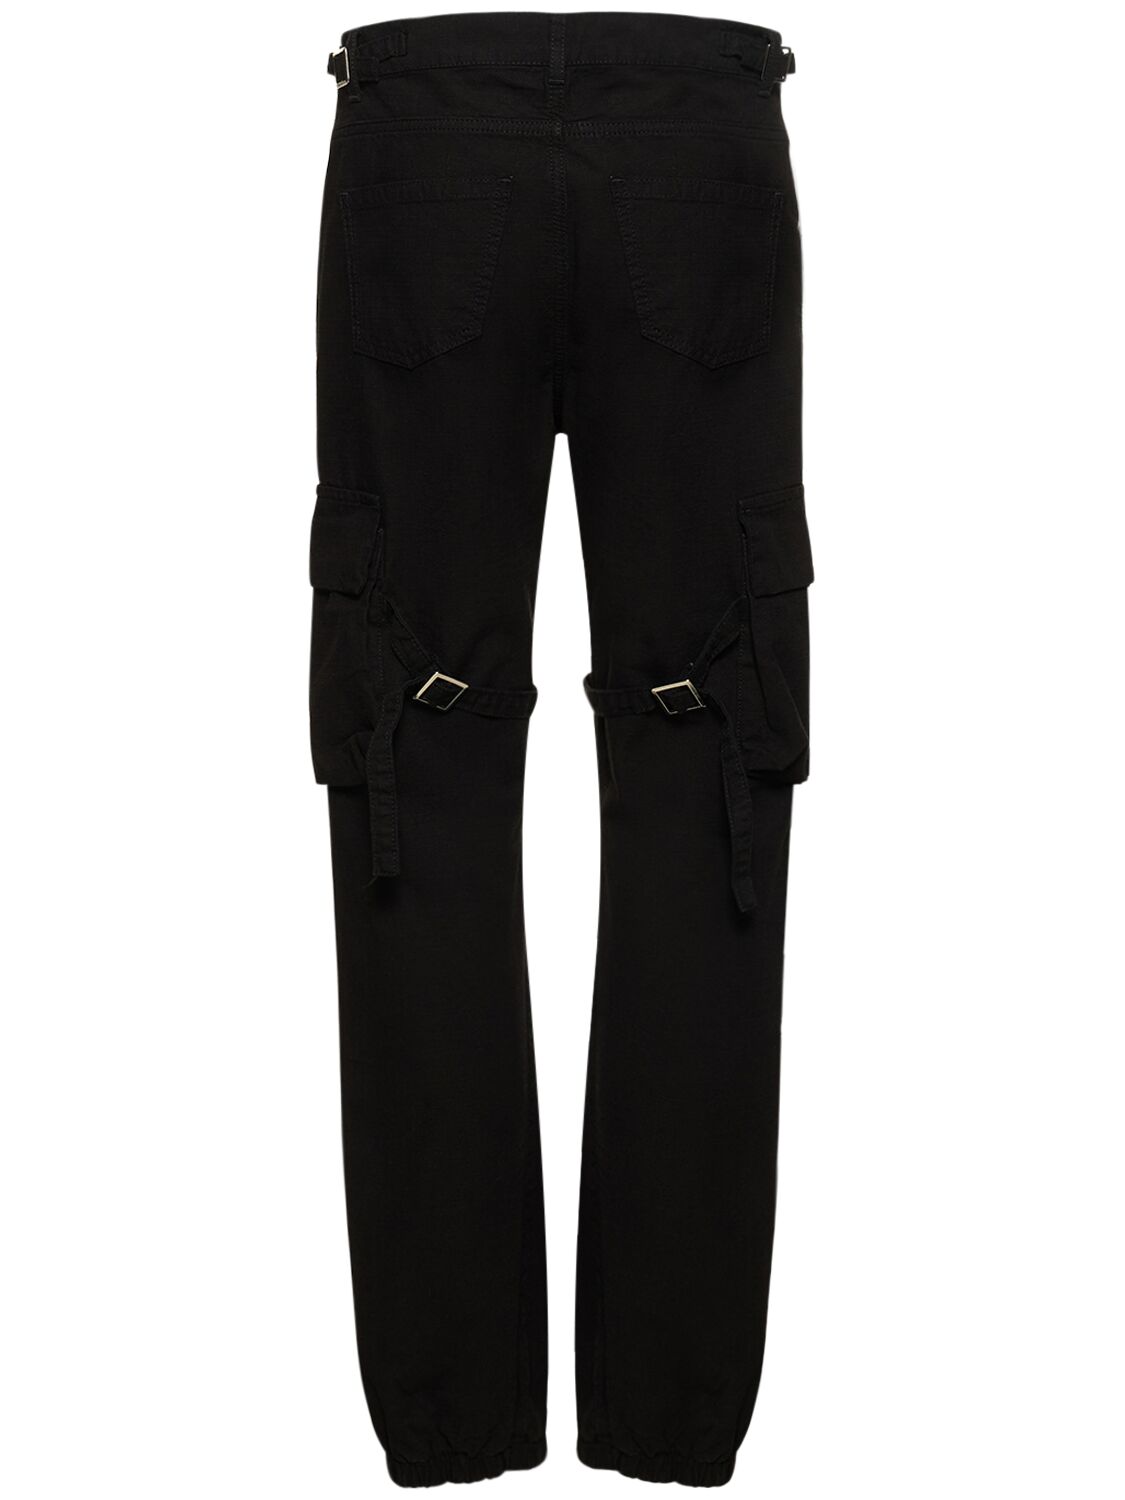 Shop Flâneur Low Rise Cotton Cargo Pants In Black